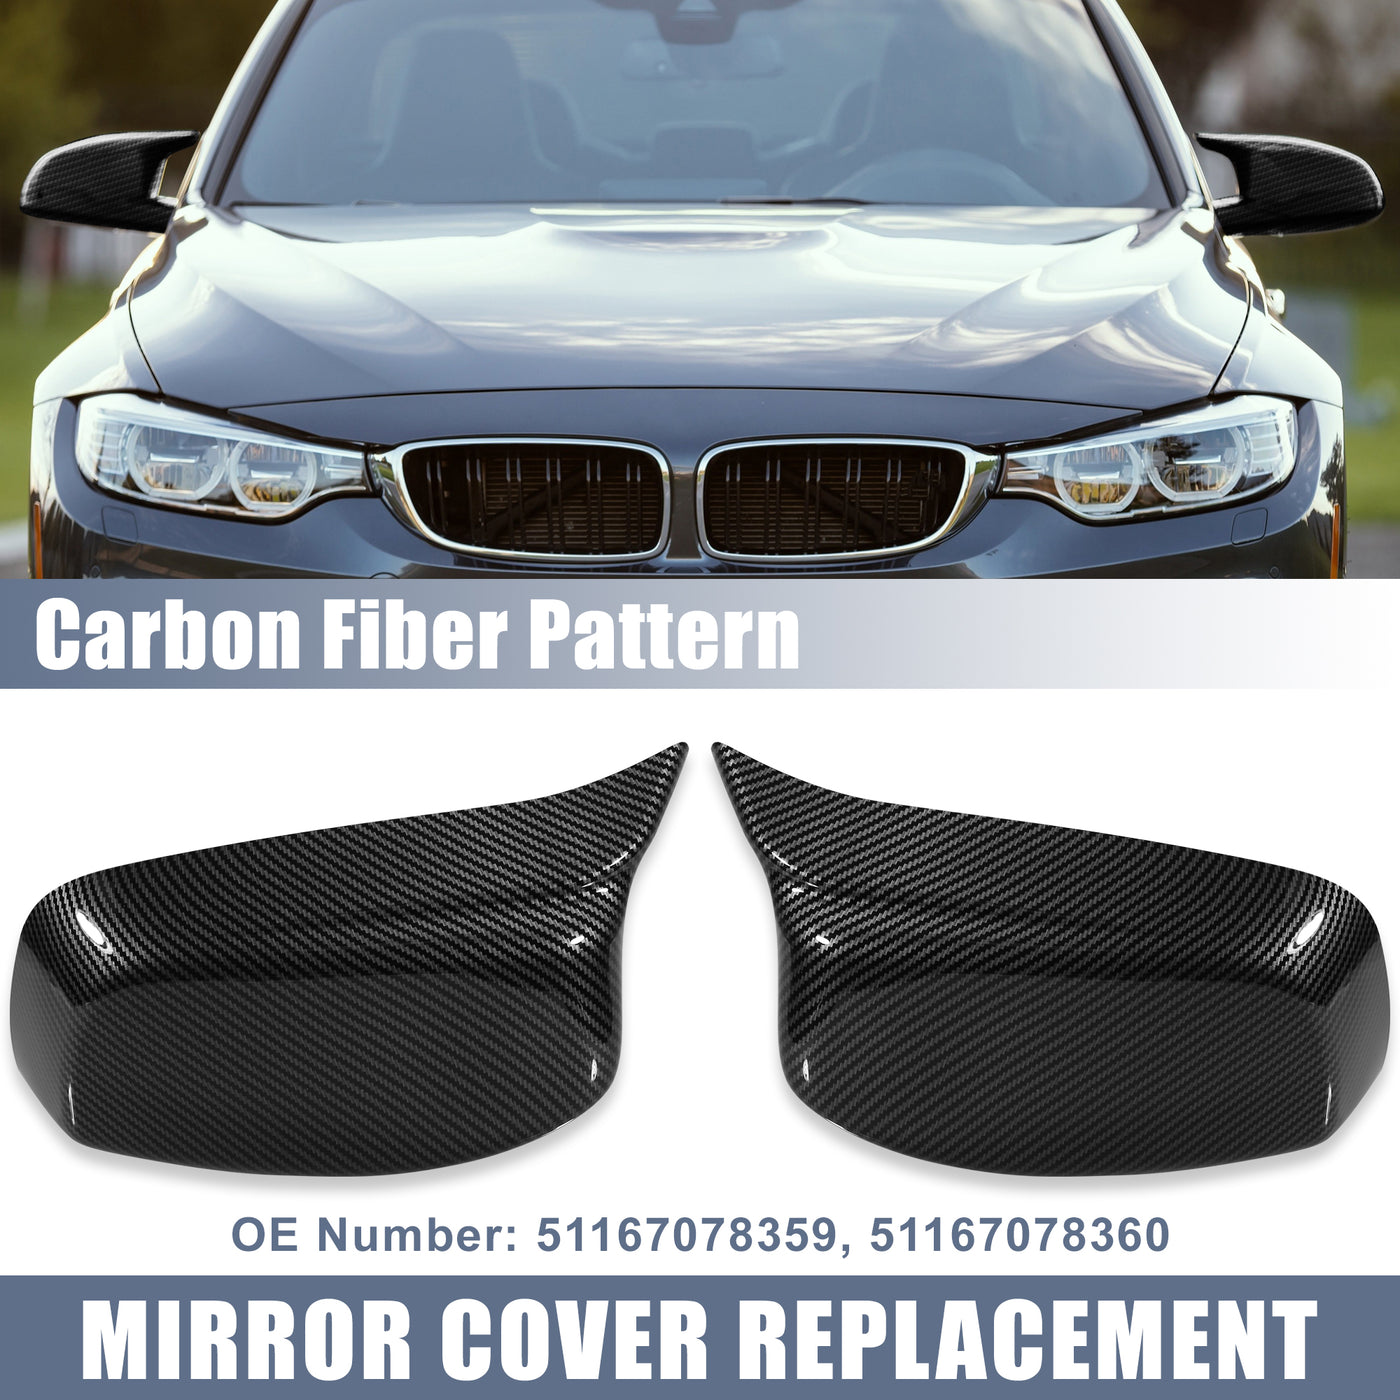 X AUTOHAUX Pair Car Exterior Rear View Mirror Covers Cap Replacement for BMW 5 Series E60 E61 E63 E64 2004-2007 Carbon Fiber Pattern